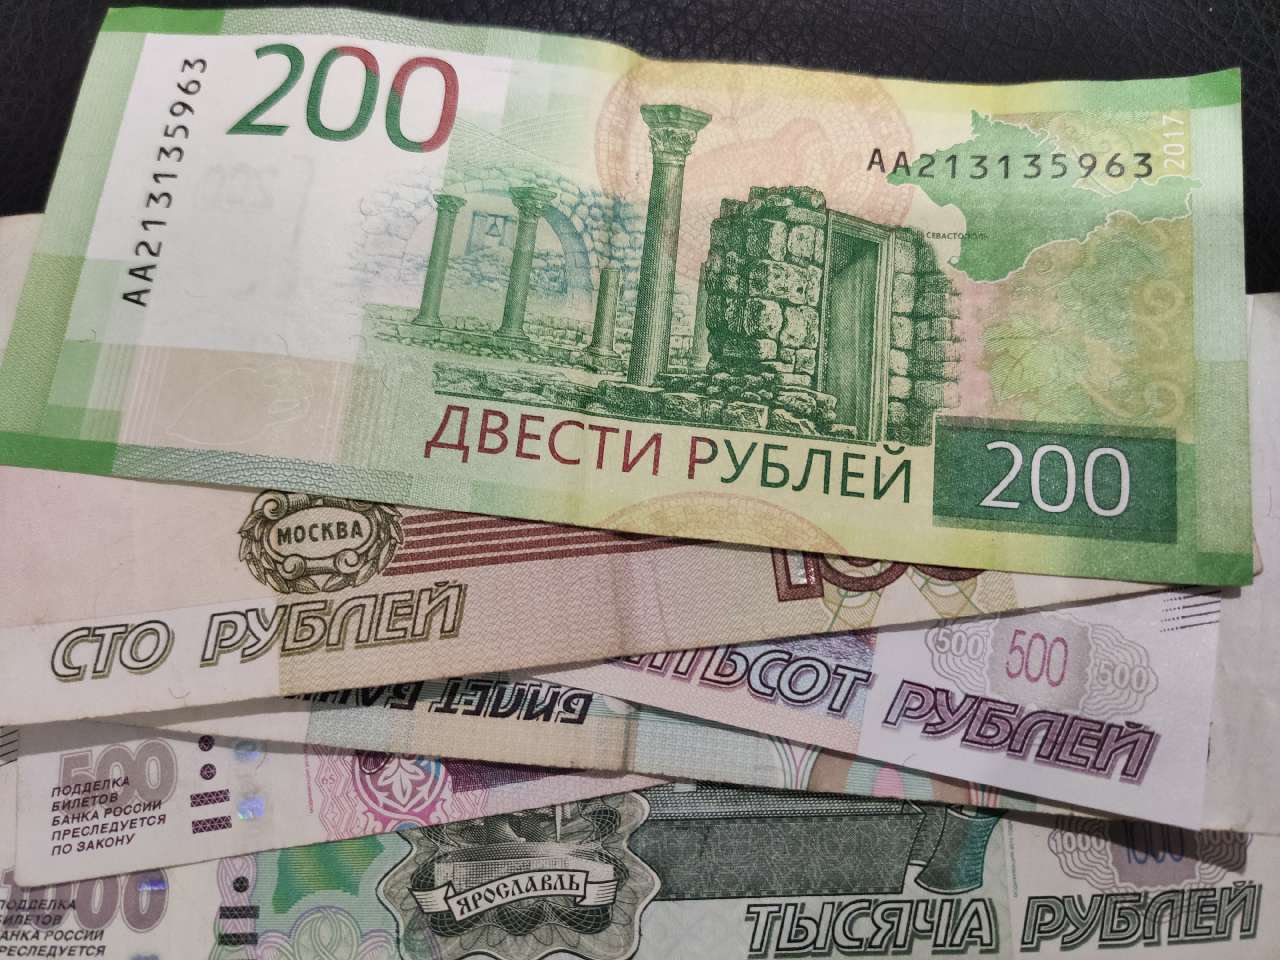 Мошенники уговорили 63-летнюю учительницу из Армавира перевести на «безопасный счет» 350 тыс руб 